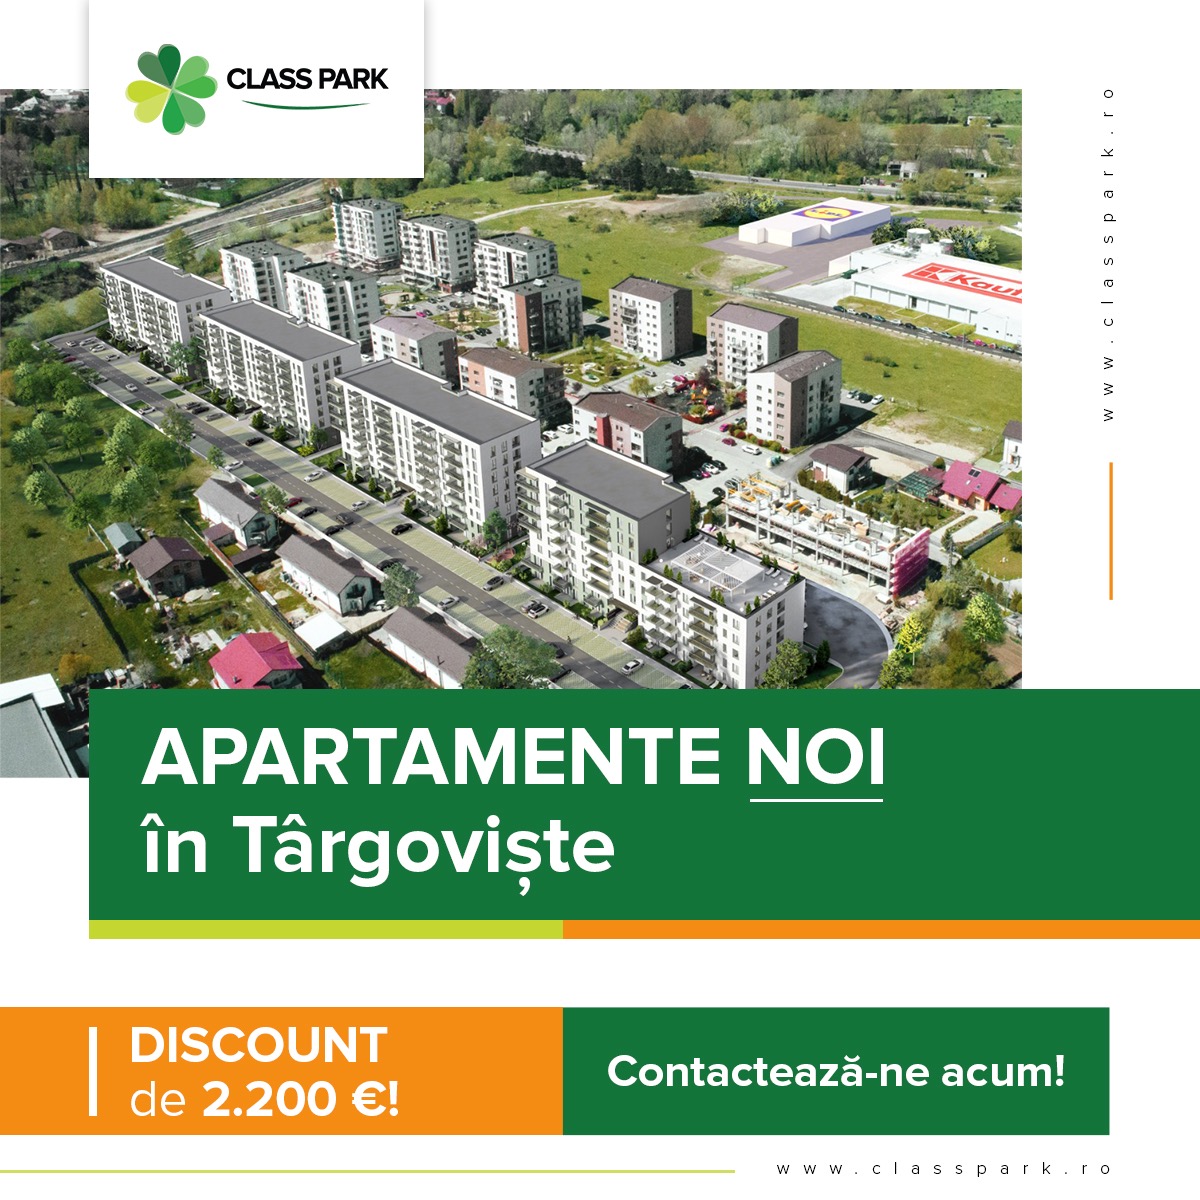 Class Park Residence Târgovişte – Prinde Oferta Lunii Septembrie: reducere de 2.200 euro și ultimele apartamente pe stoc!